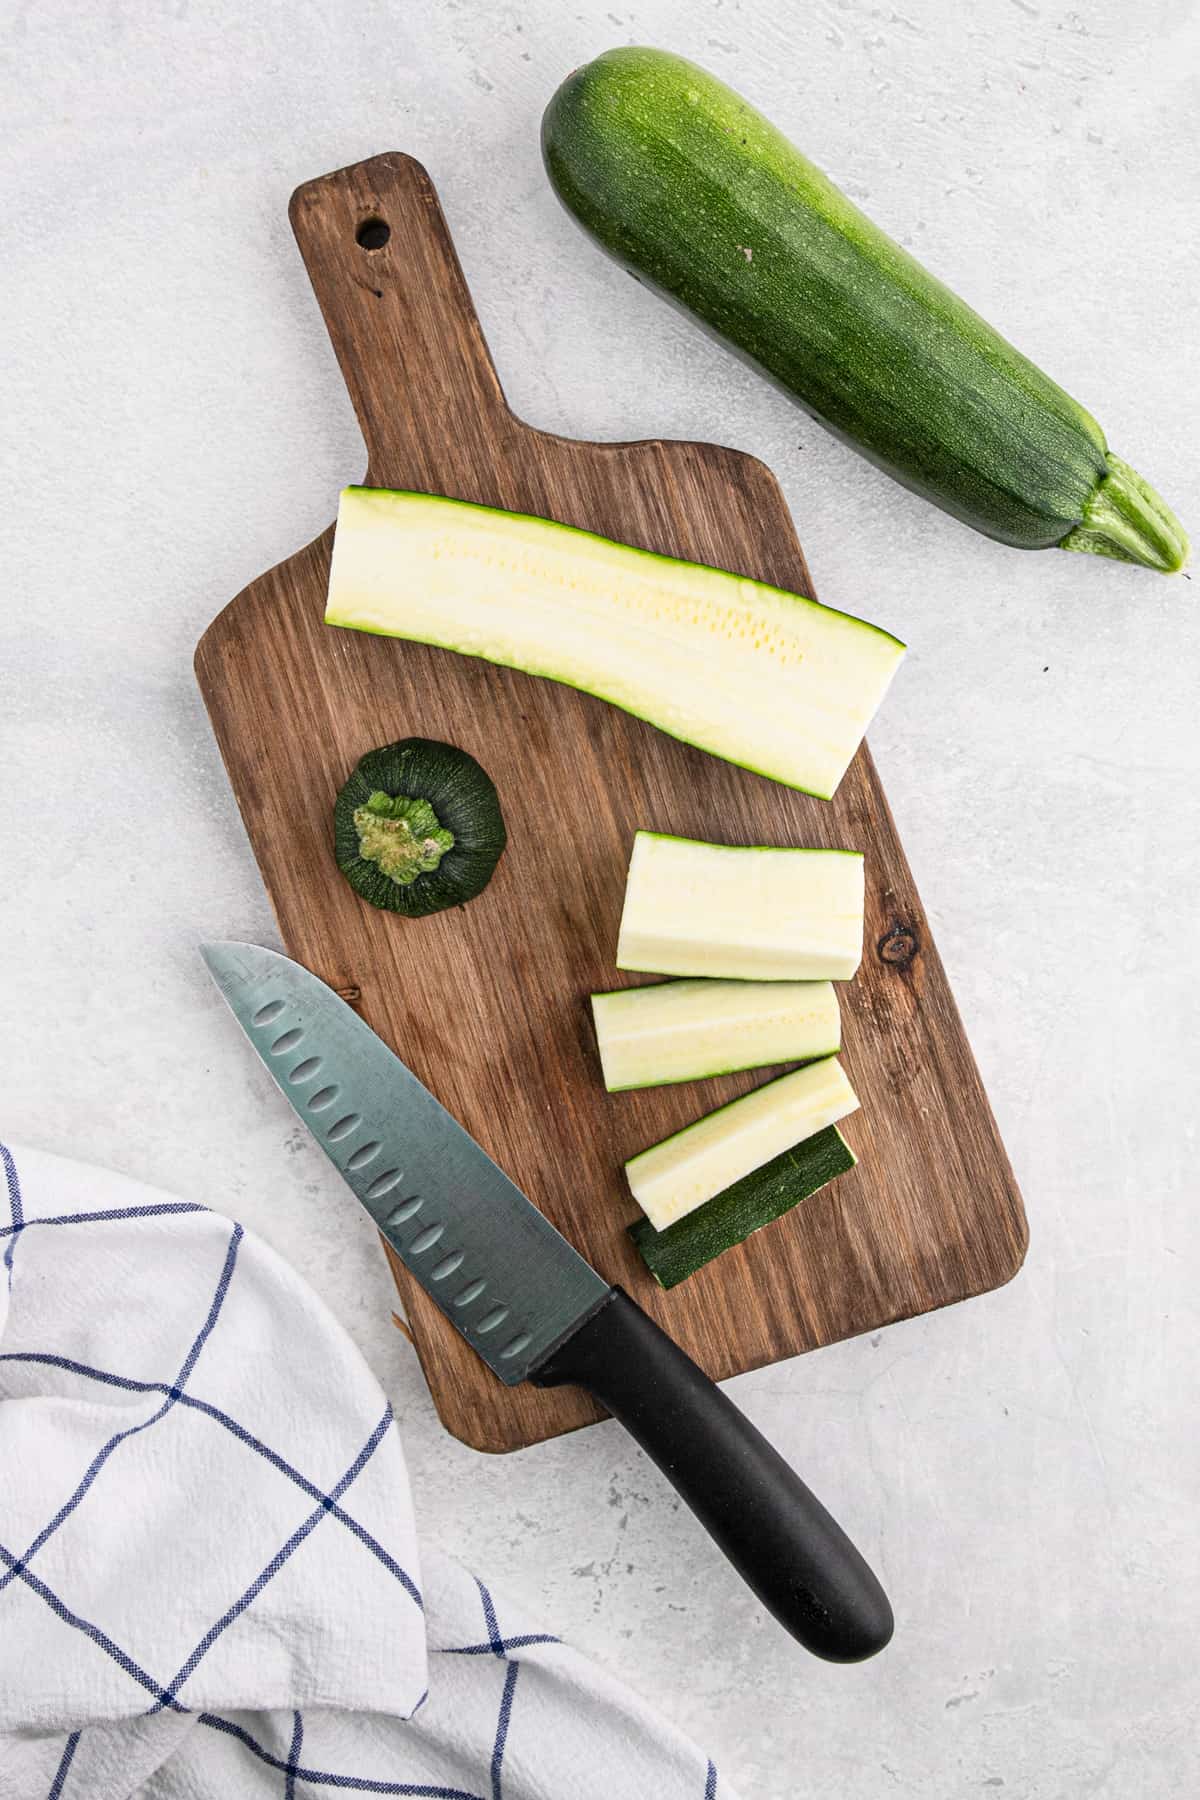 Sliced zucchini on a cutting board.